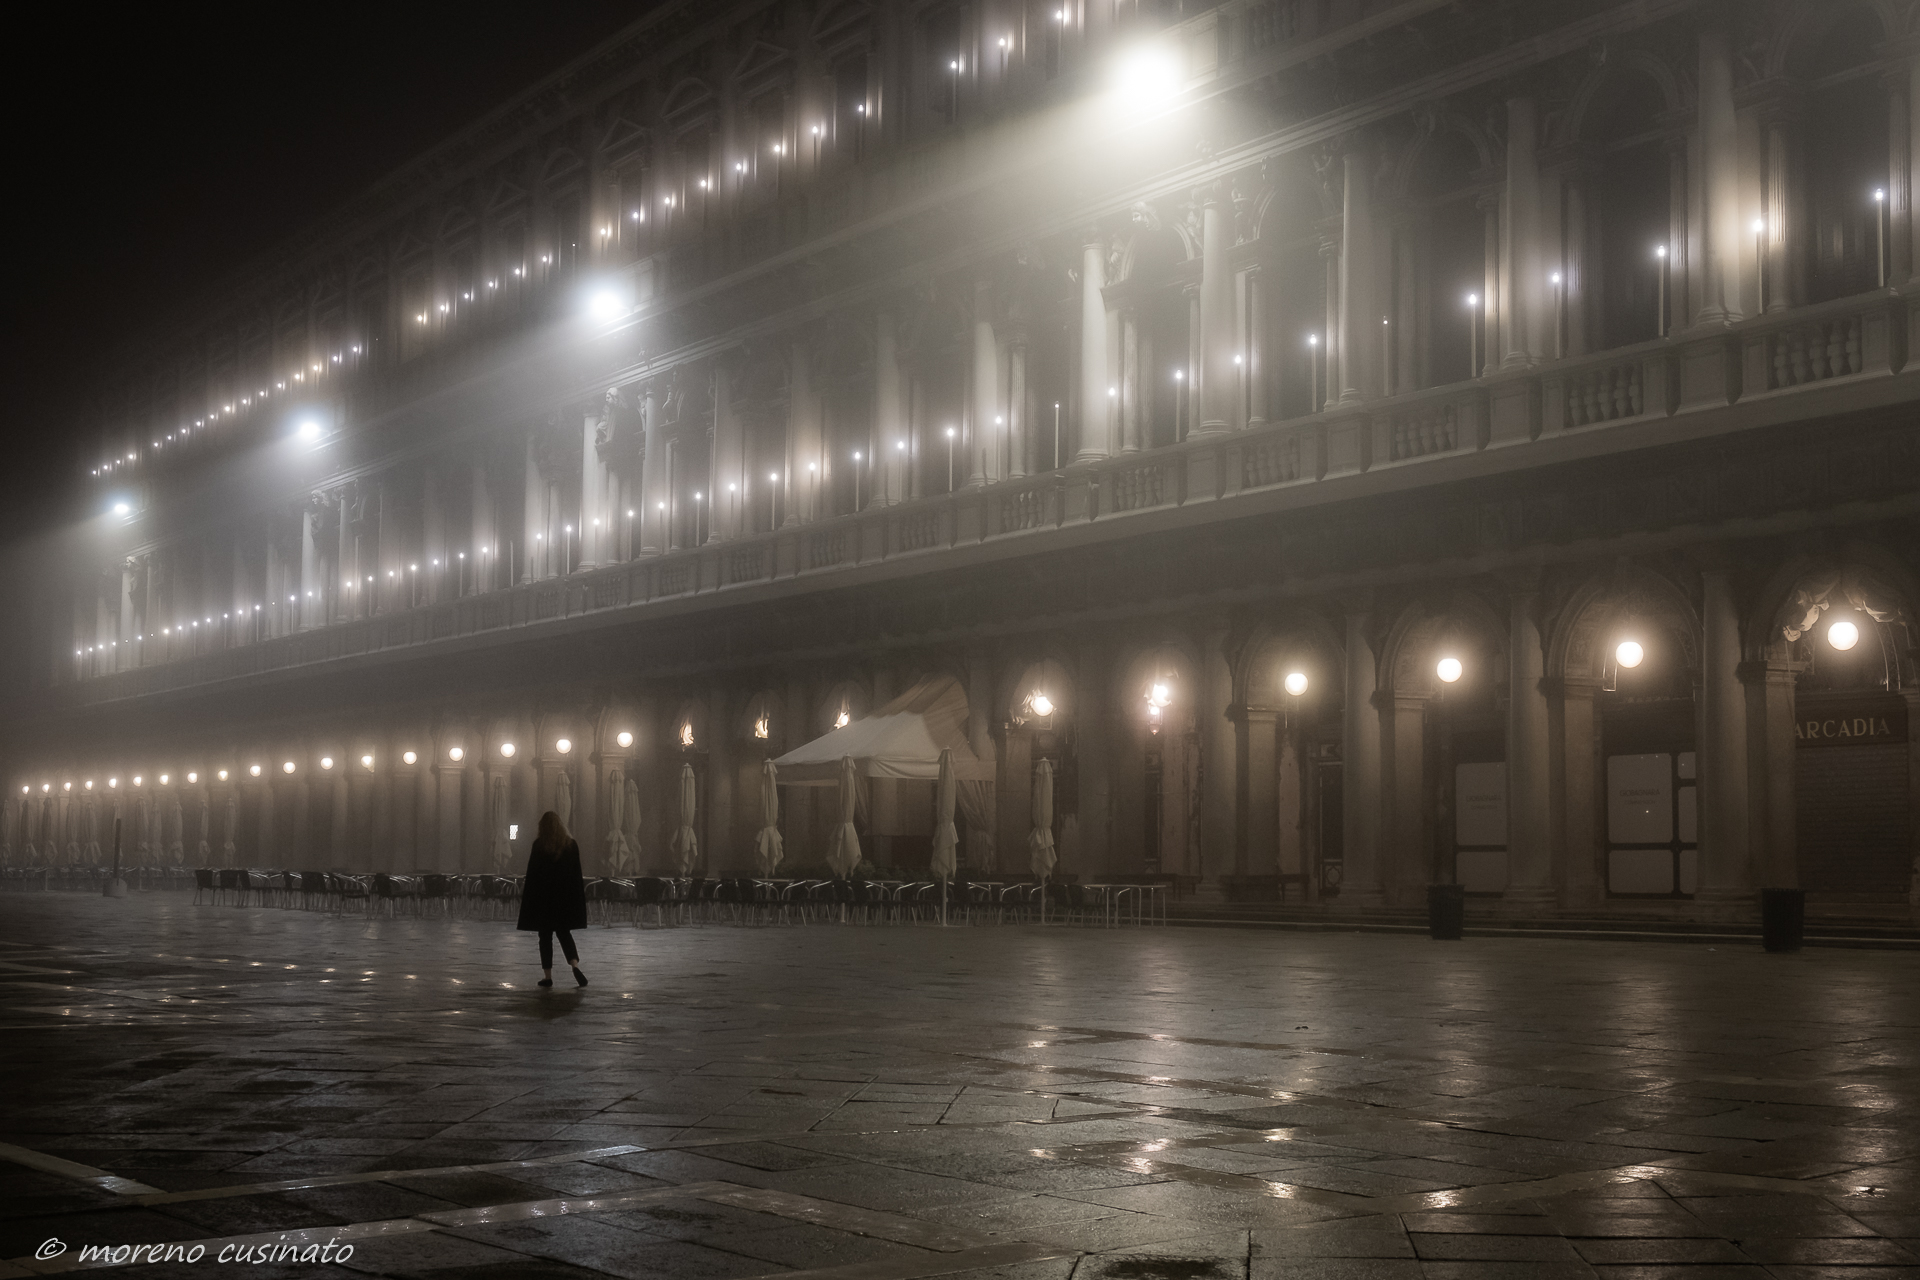 Night in Venice ...